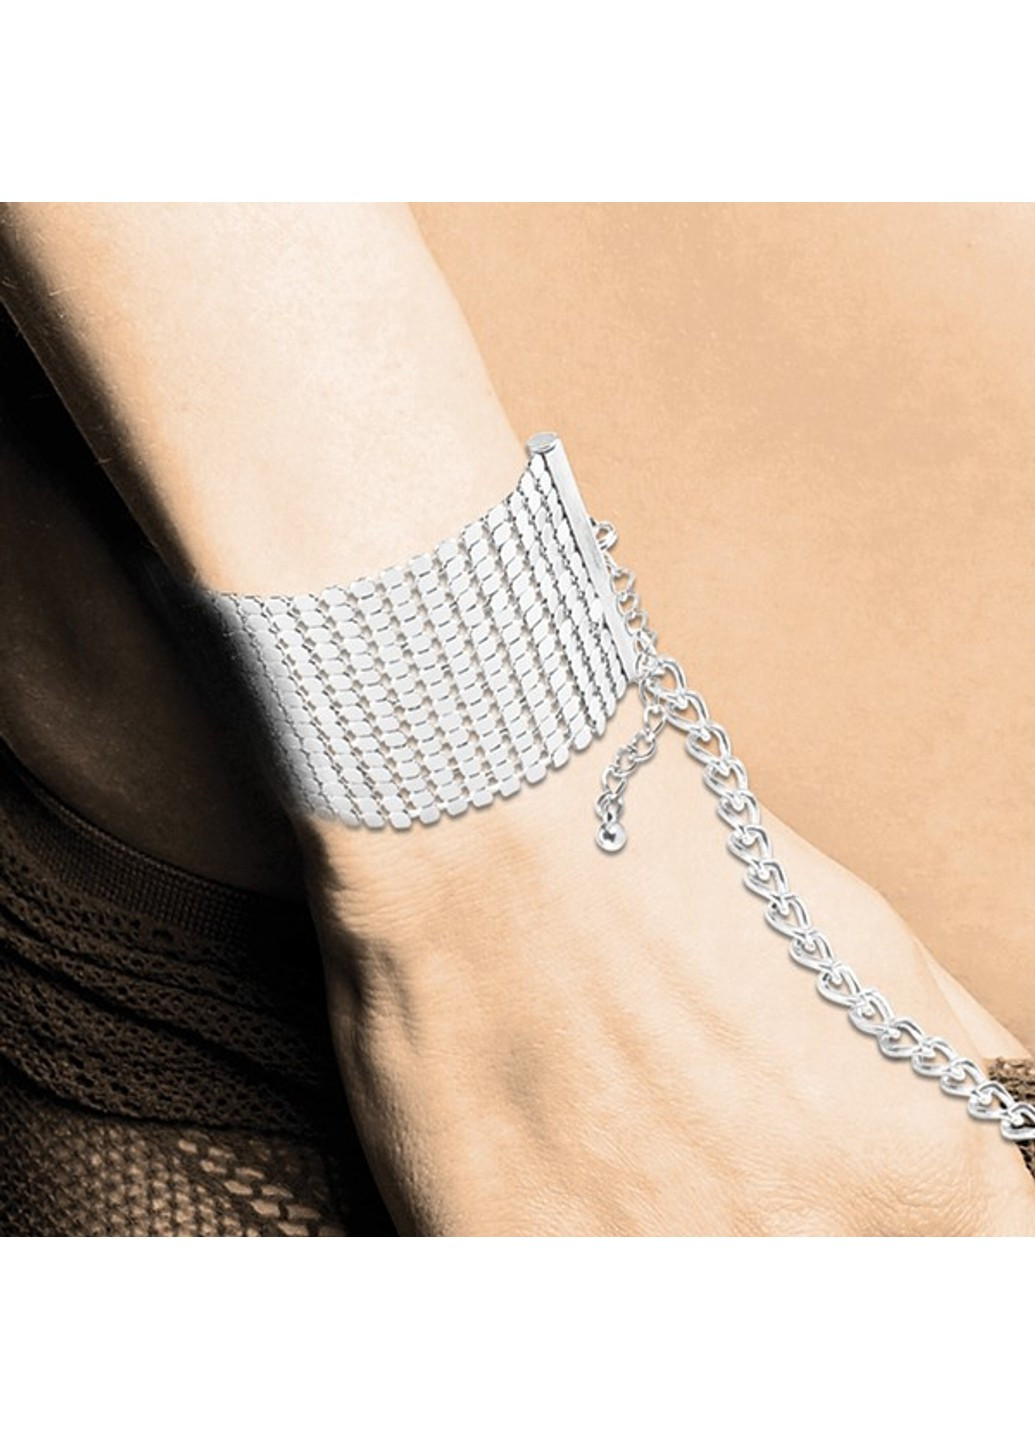 Браслеты - наручники DESIR METALLIQUE цвет: серебристый (Испания) Bijoux Indiscrets (252383400)